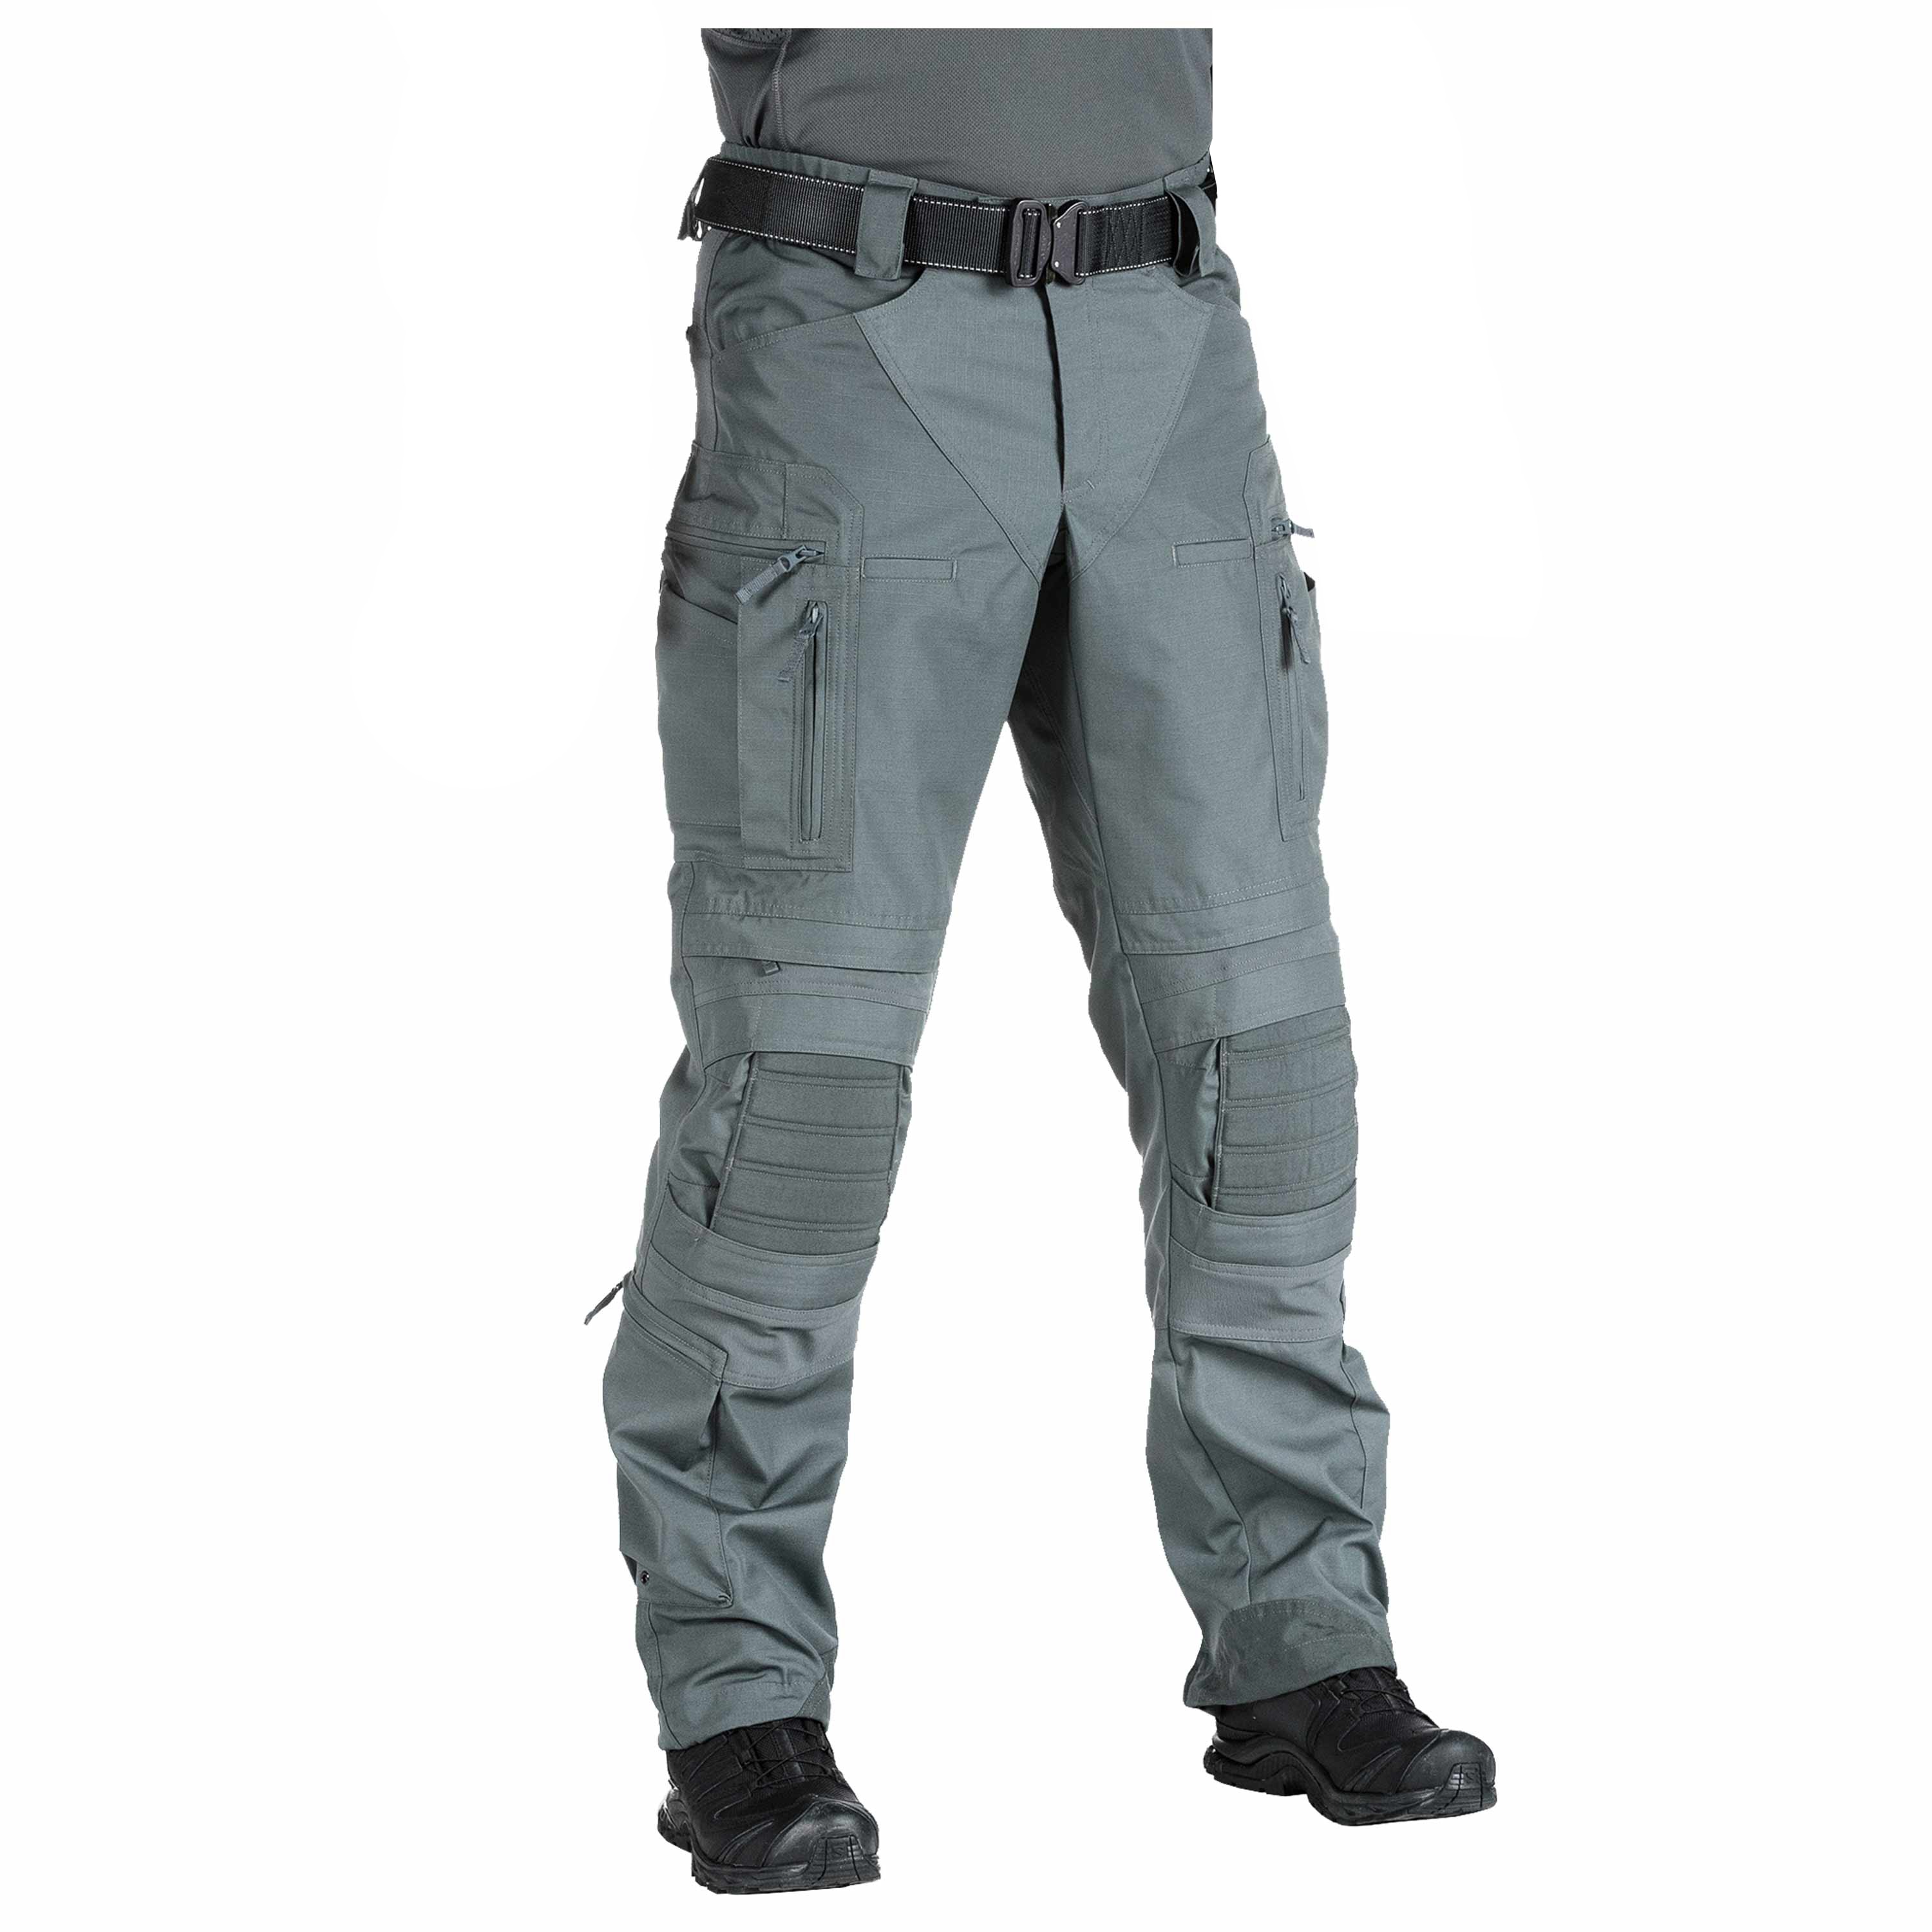 Purchase the UF Pro Combat Pants Striker XT Gen. 2 steel grey by